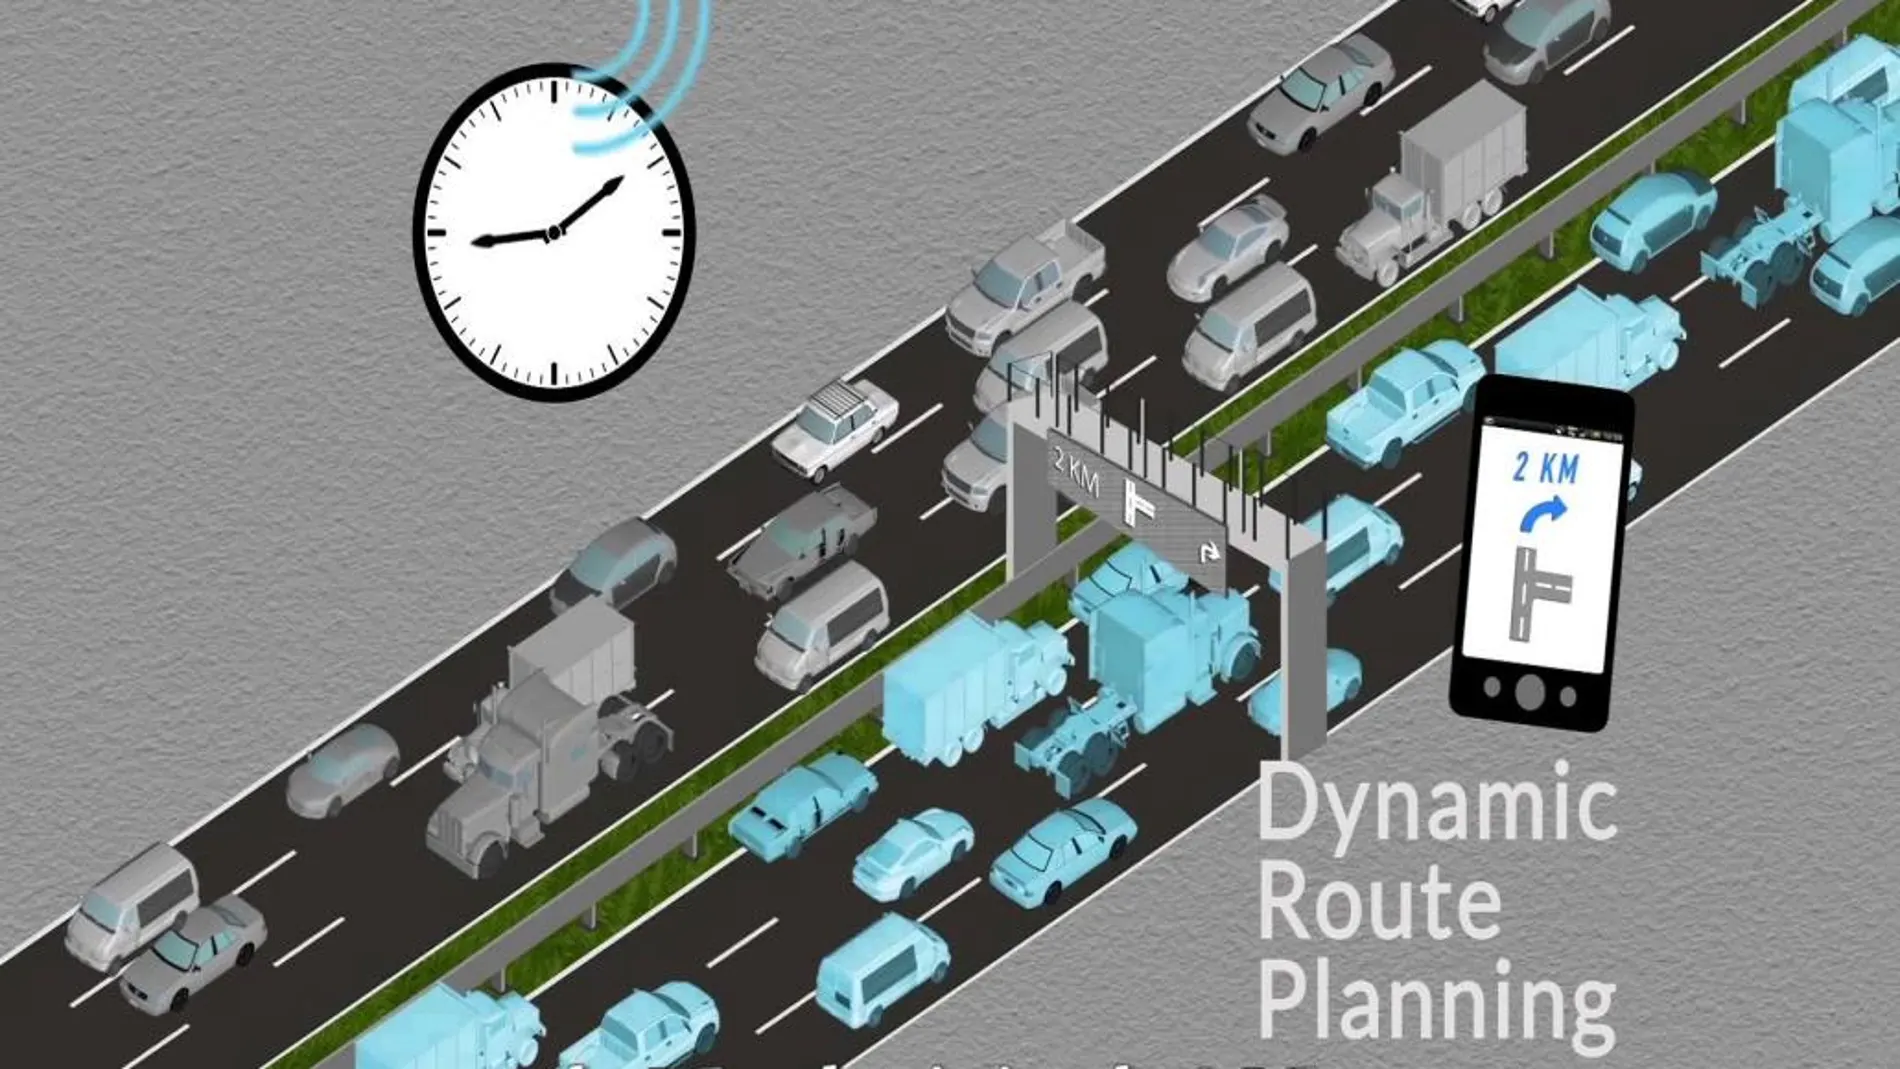 El proyecto FOTsis pretende facilitar la planificación dinámica de rutas, para reducir los atascos y la contaminación